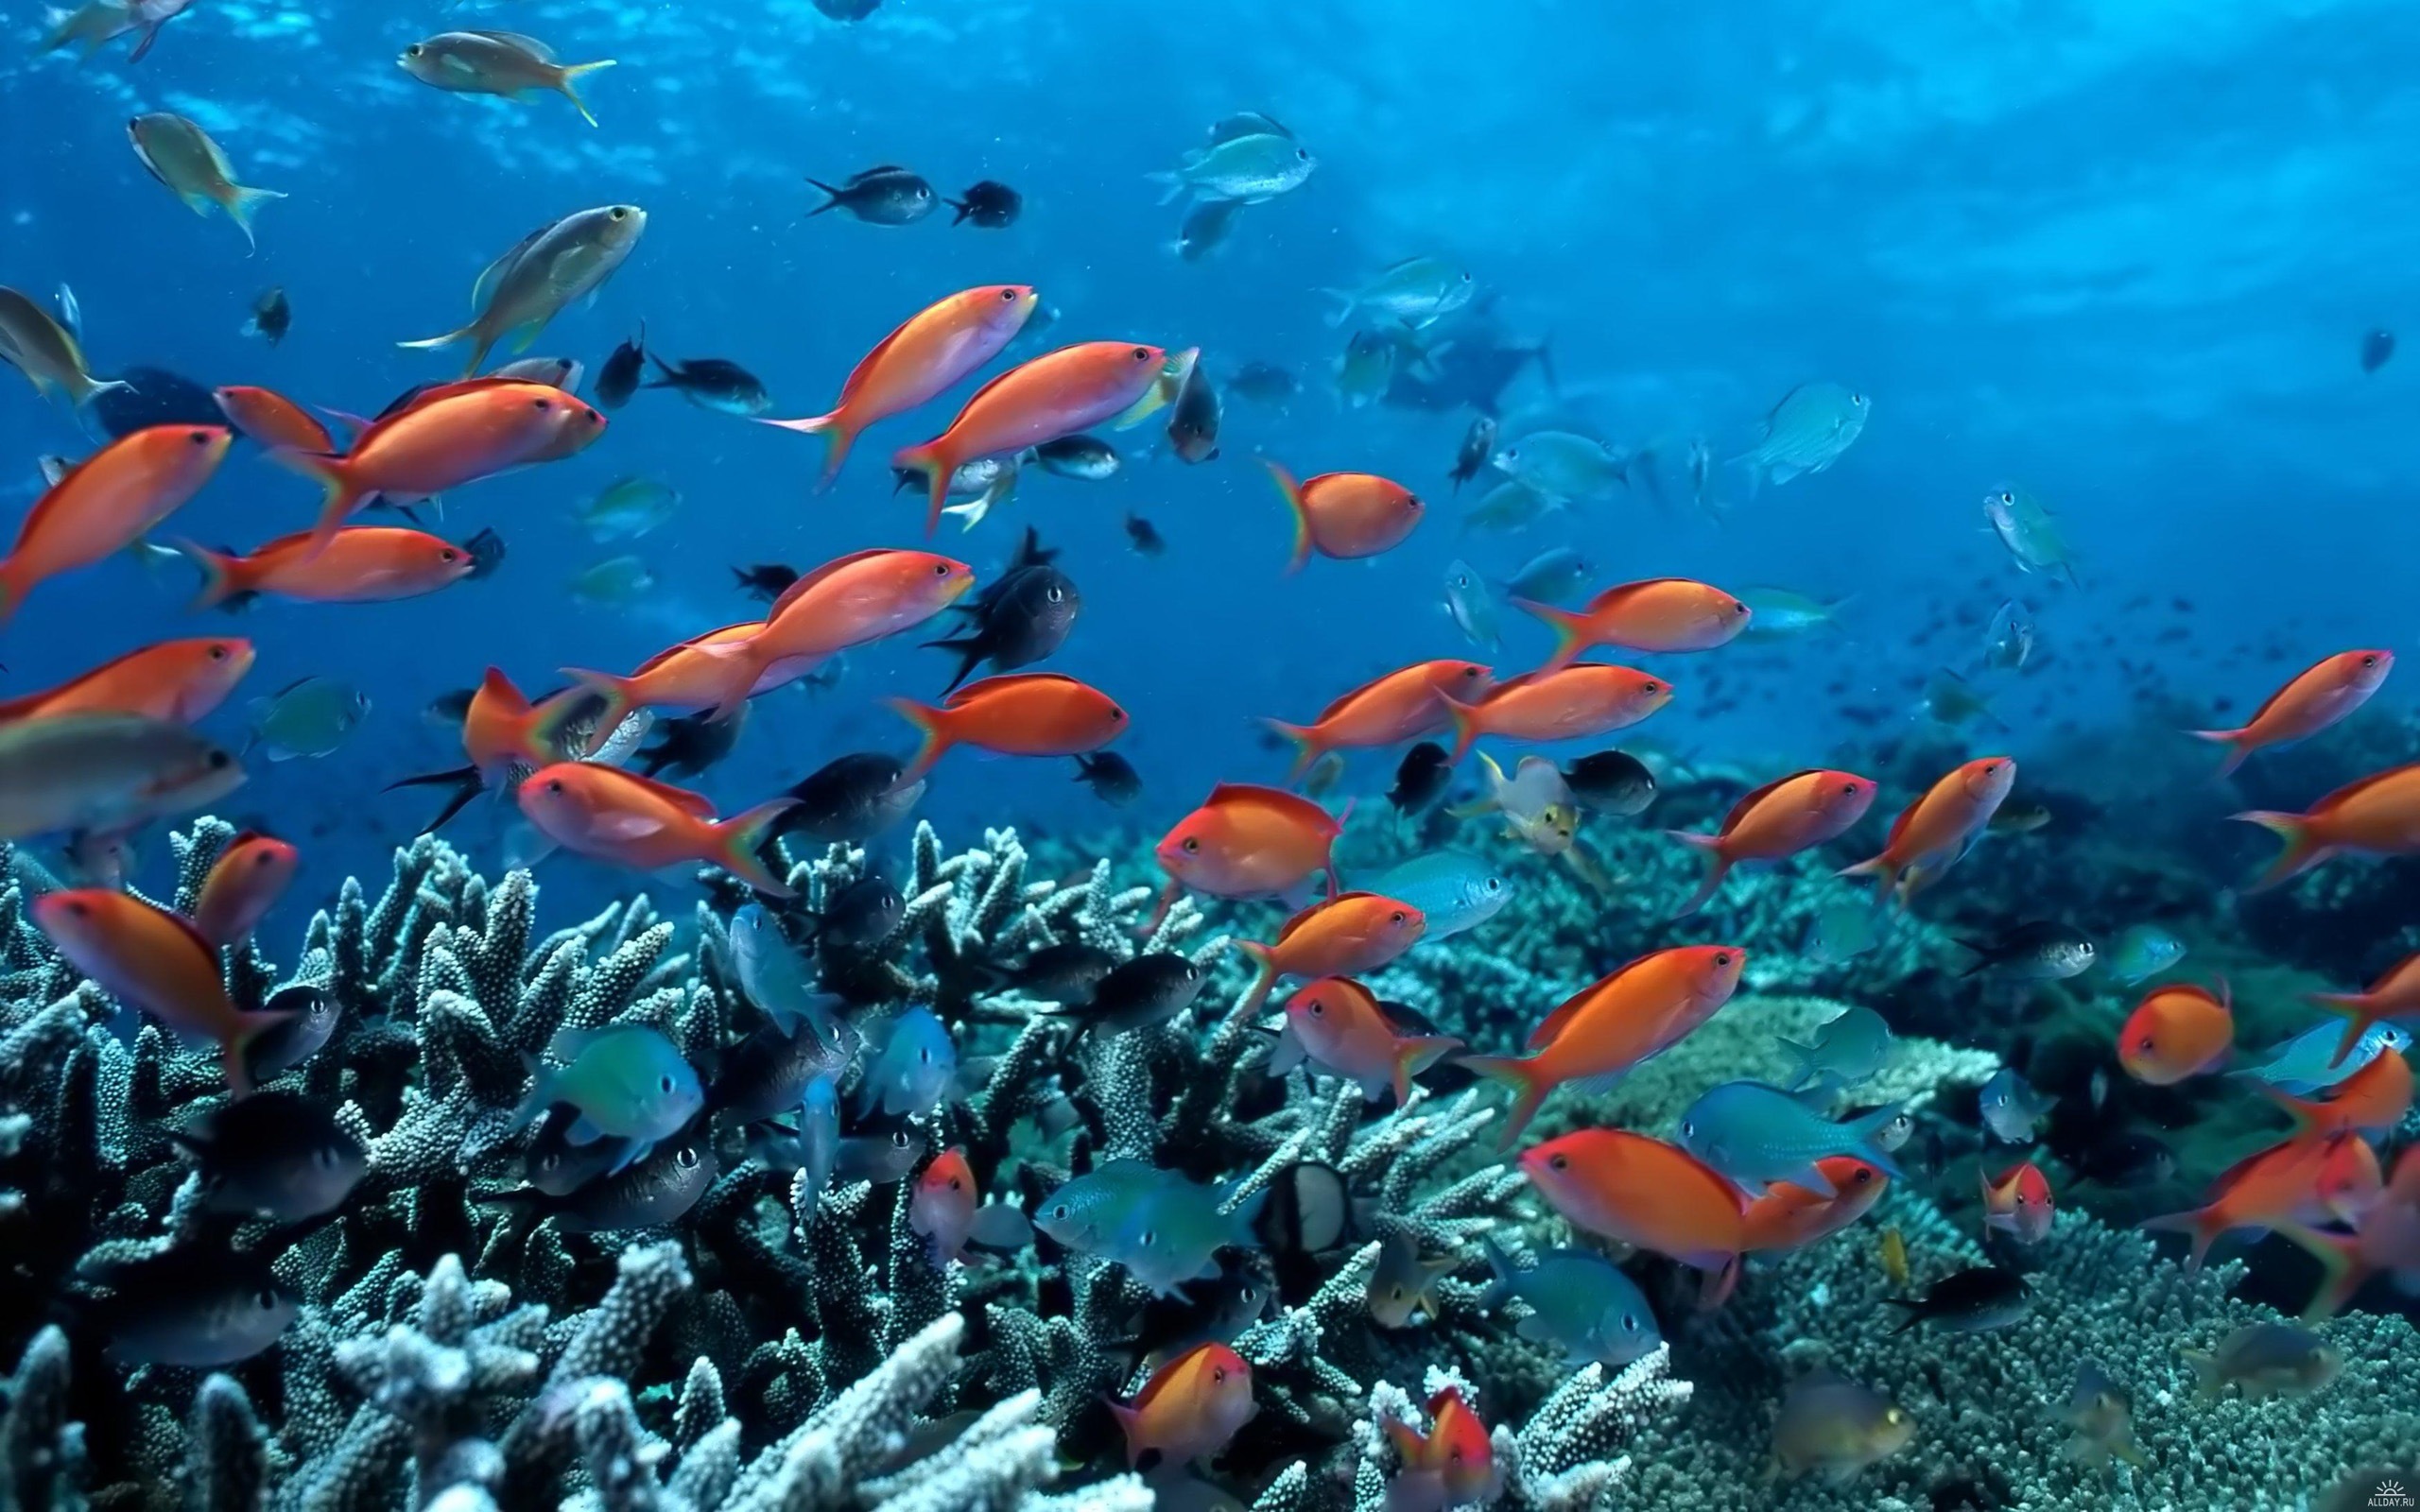 schwimmender fisch tapete,korallenriff,unter wasser,korallenrifffische,meeresbiologie,fisch